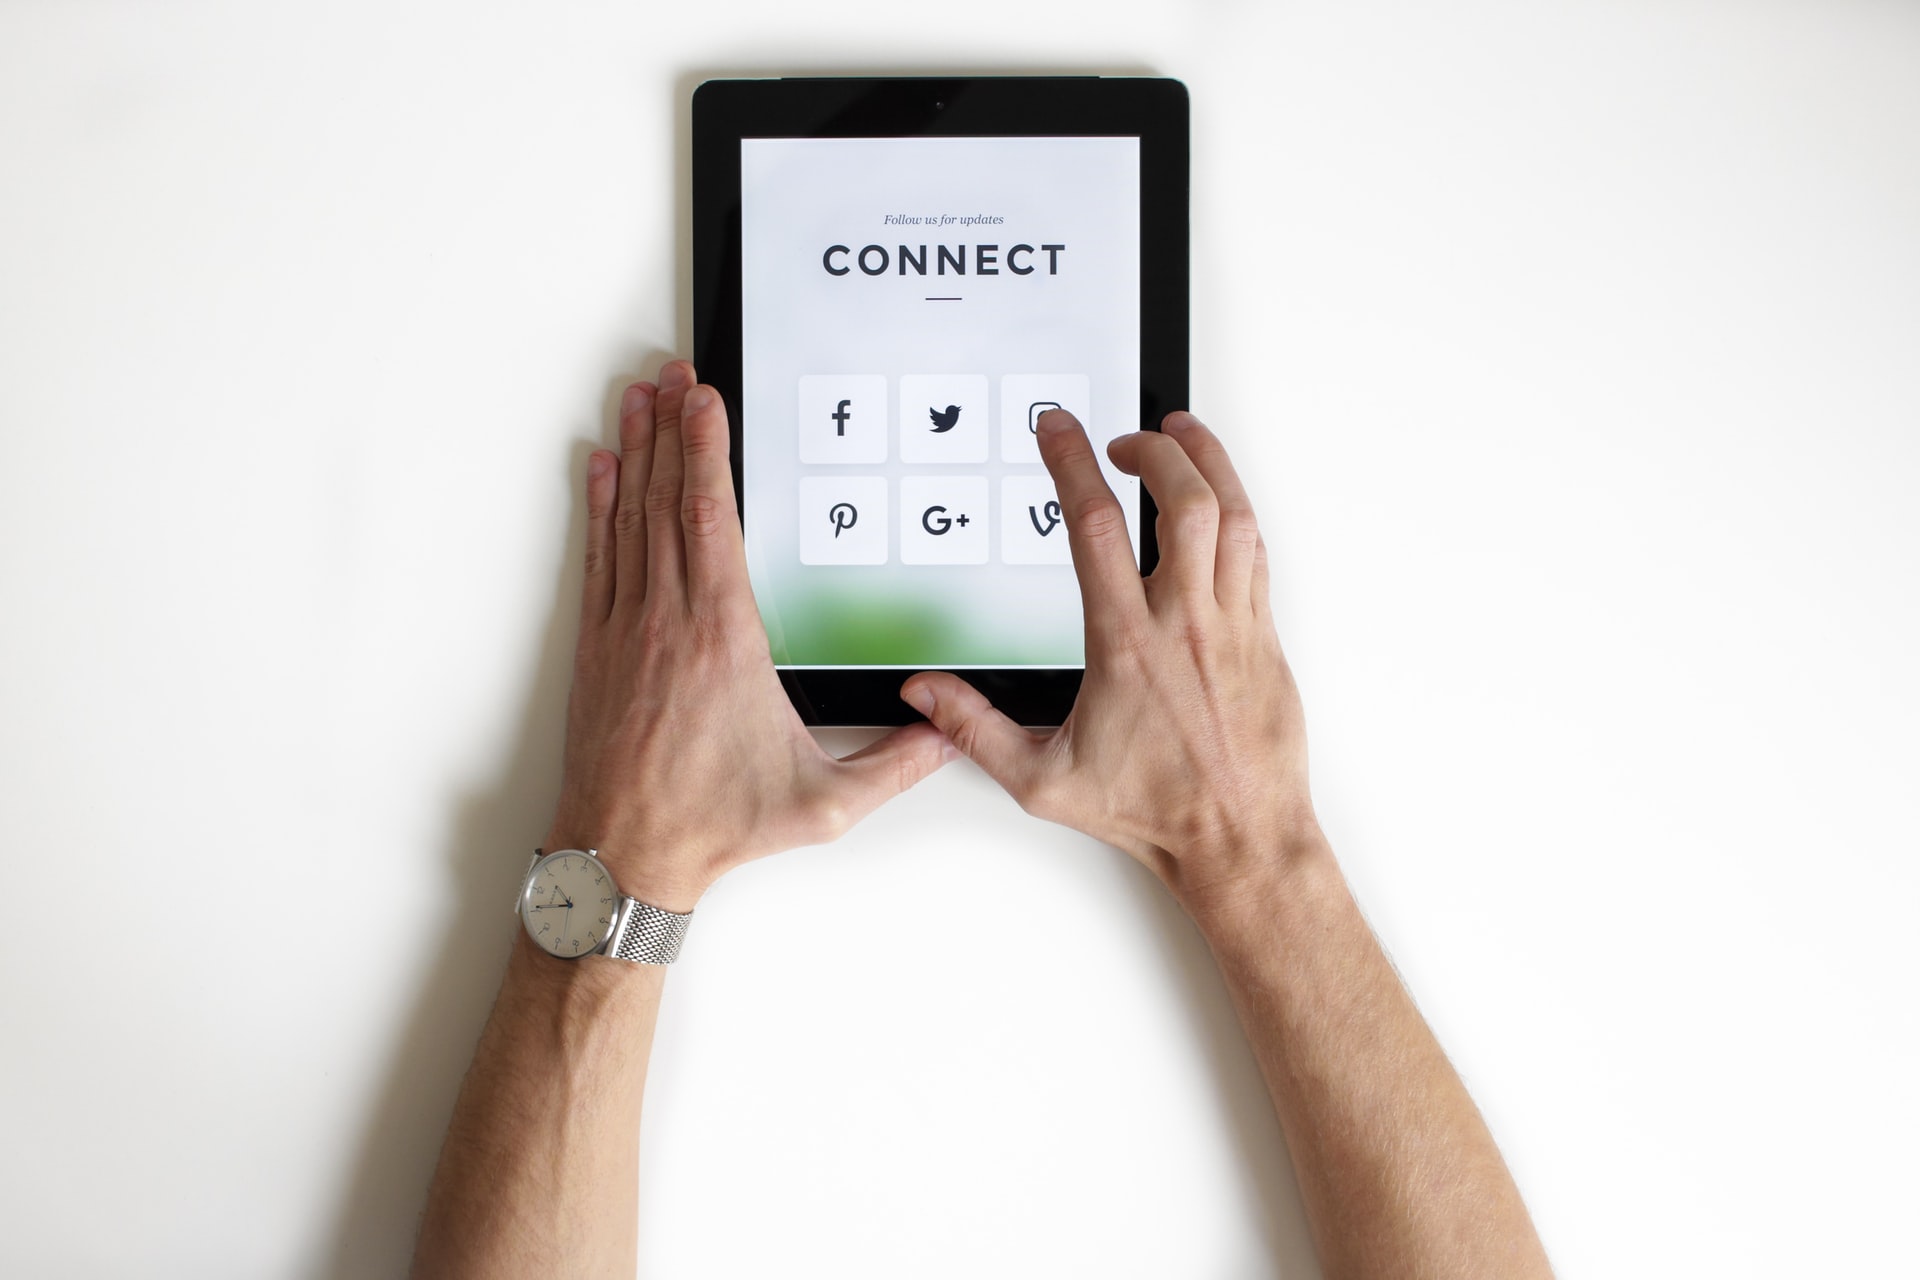 vídeo marketing: duas mãos masculinas interagindo com um tablet conectado às redes sociais